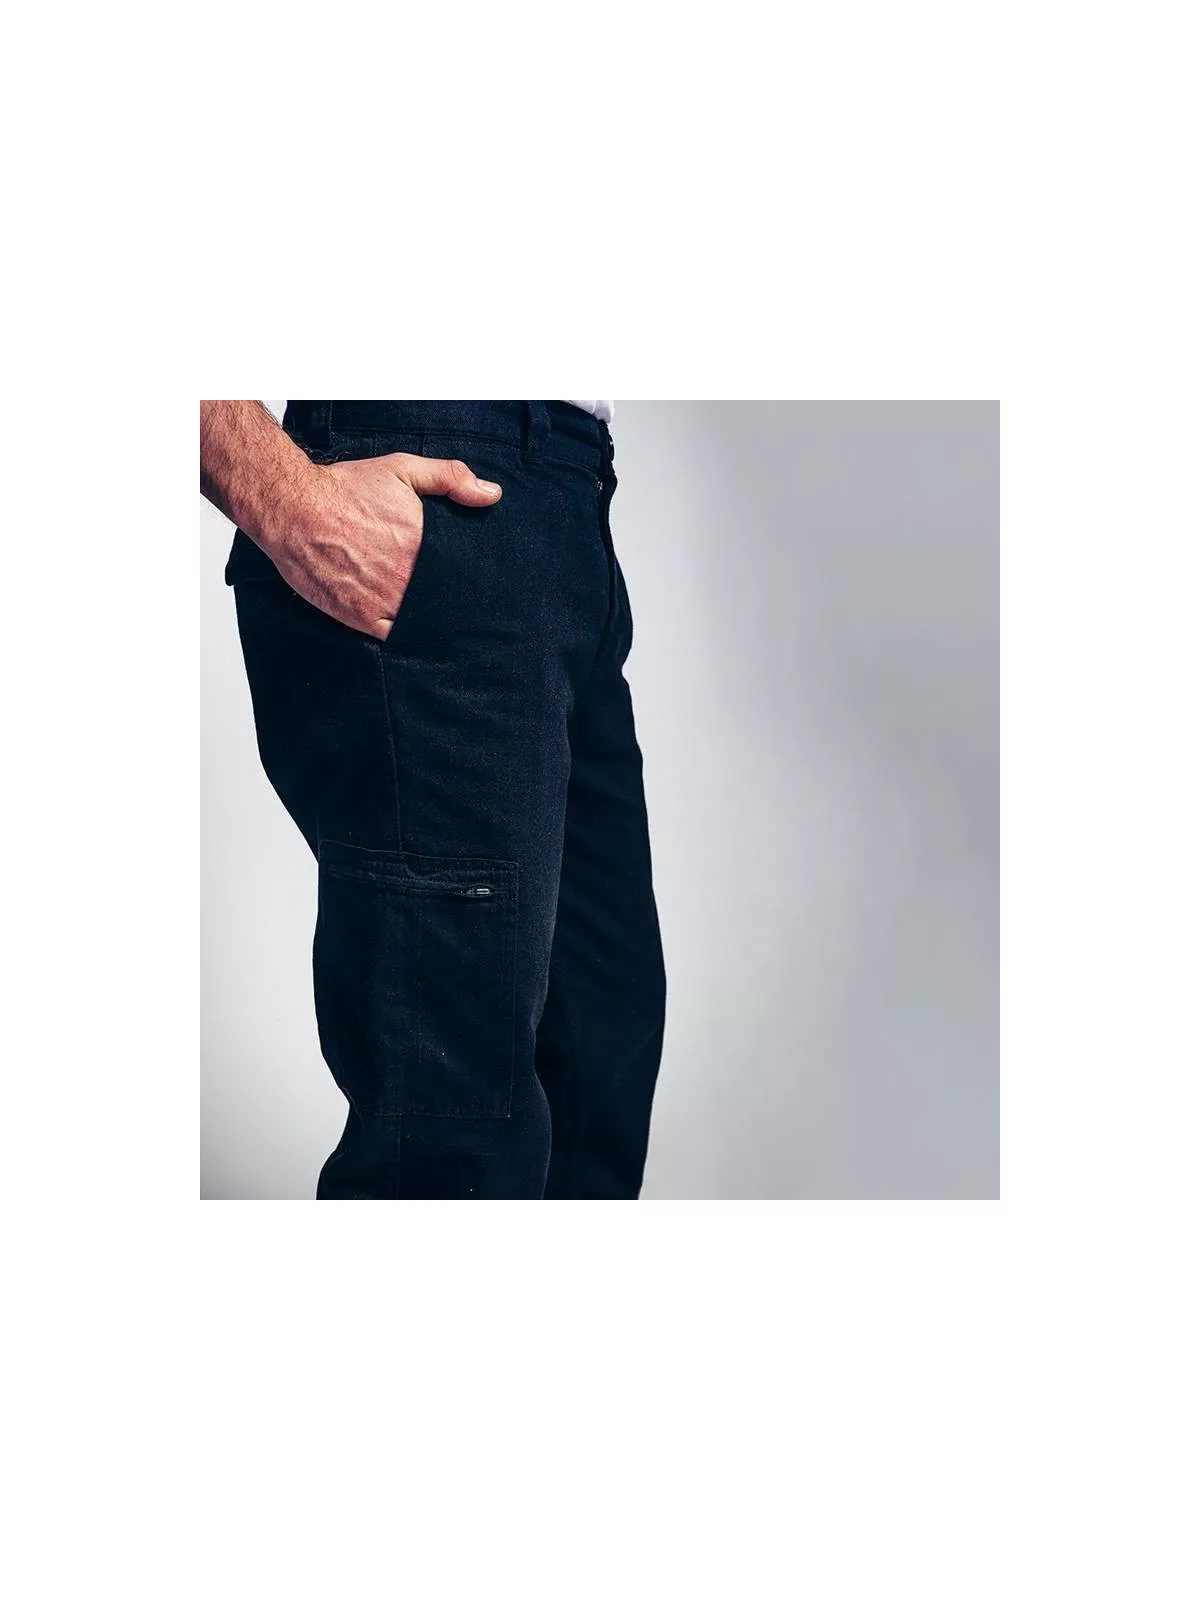 Pantalon de travail noir, 100% coton biologique. Pro et looké.